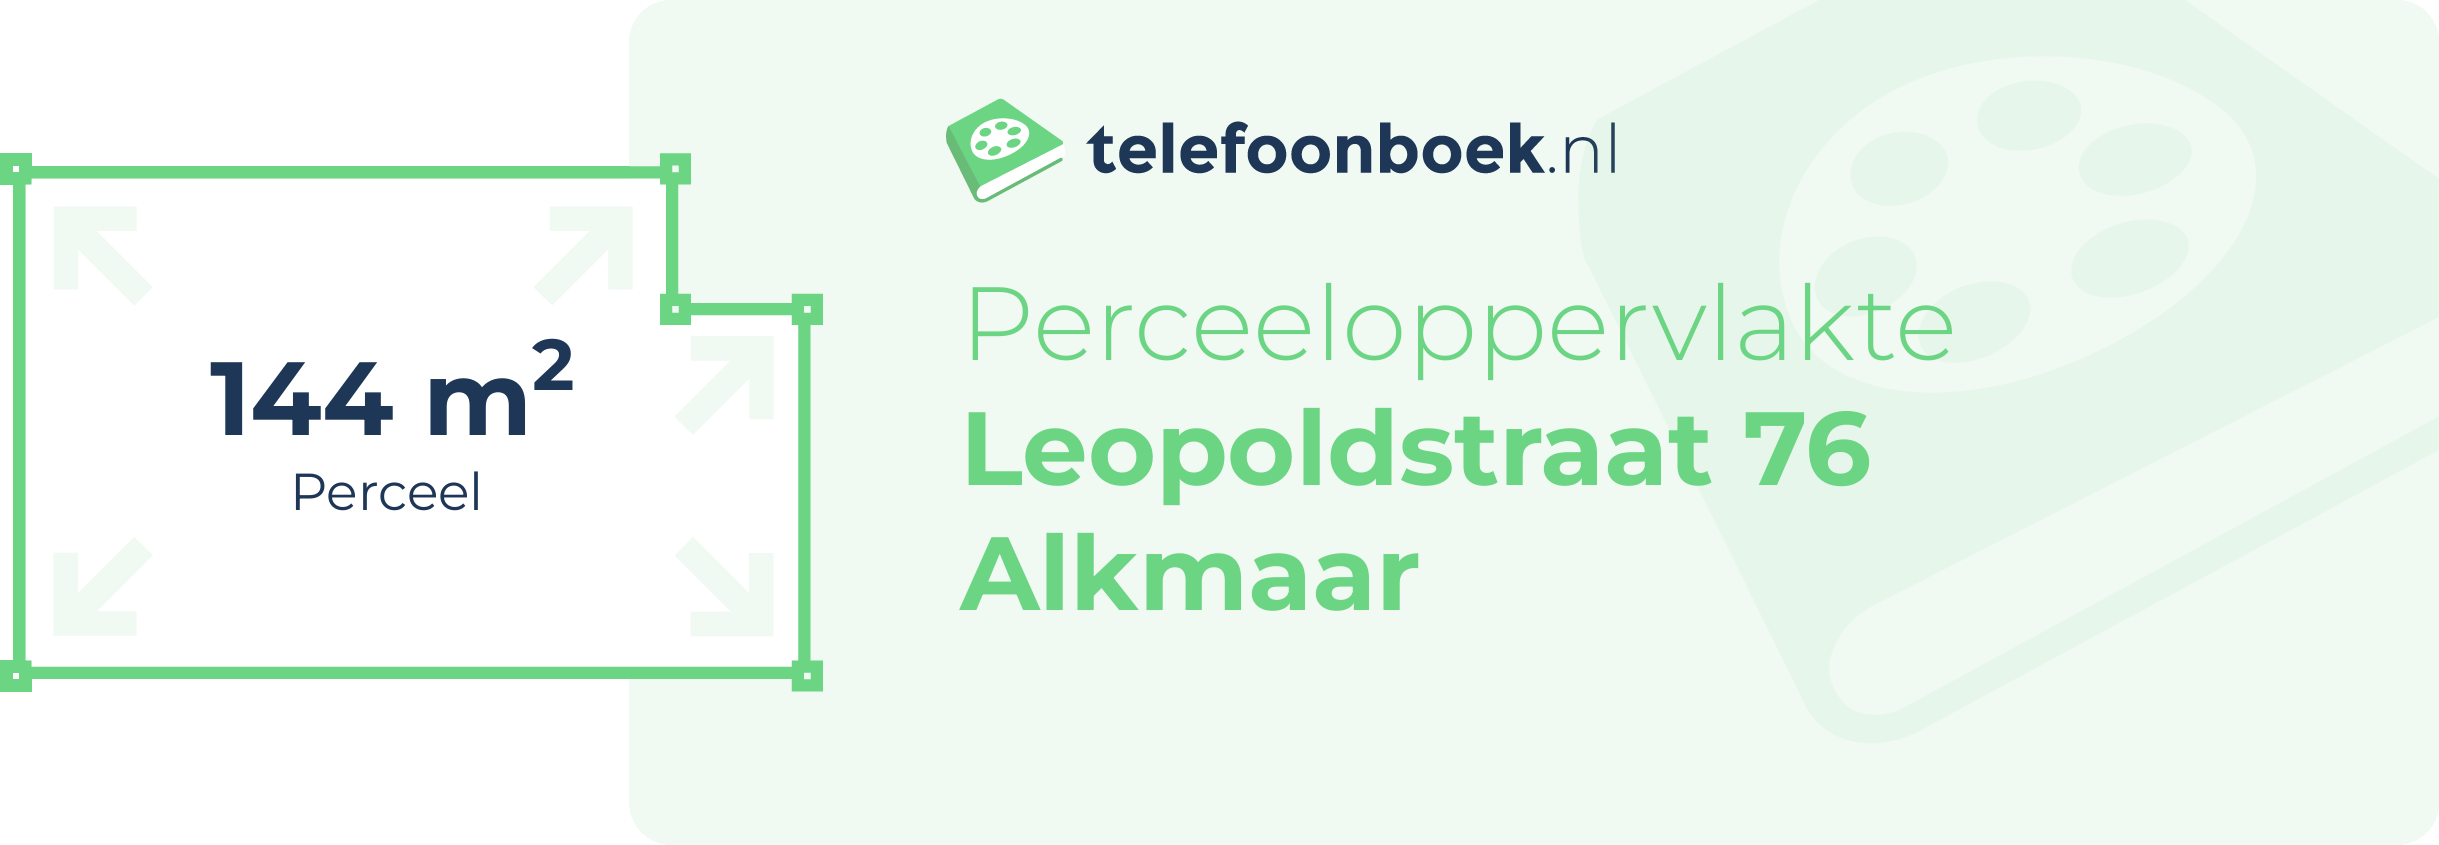 Perceeloppervlakte Leopoldstraat 76 Alkmaar